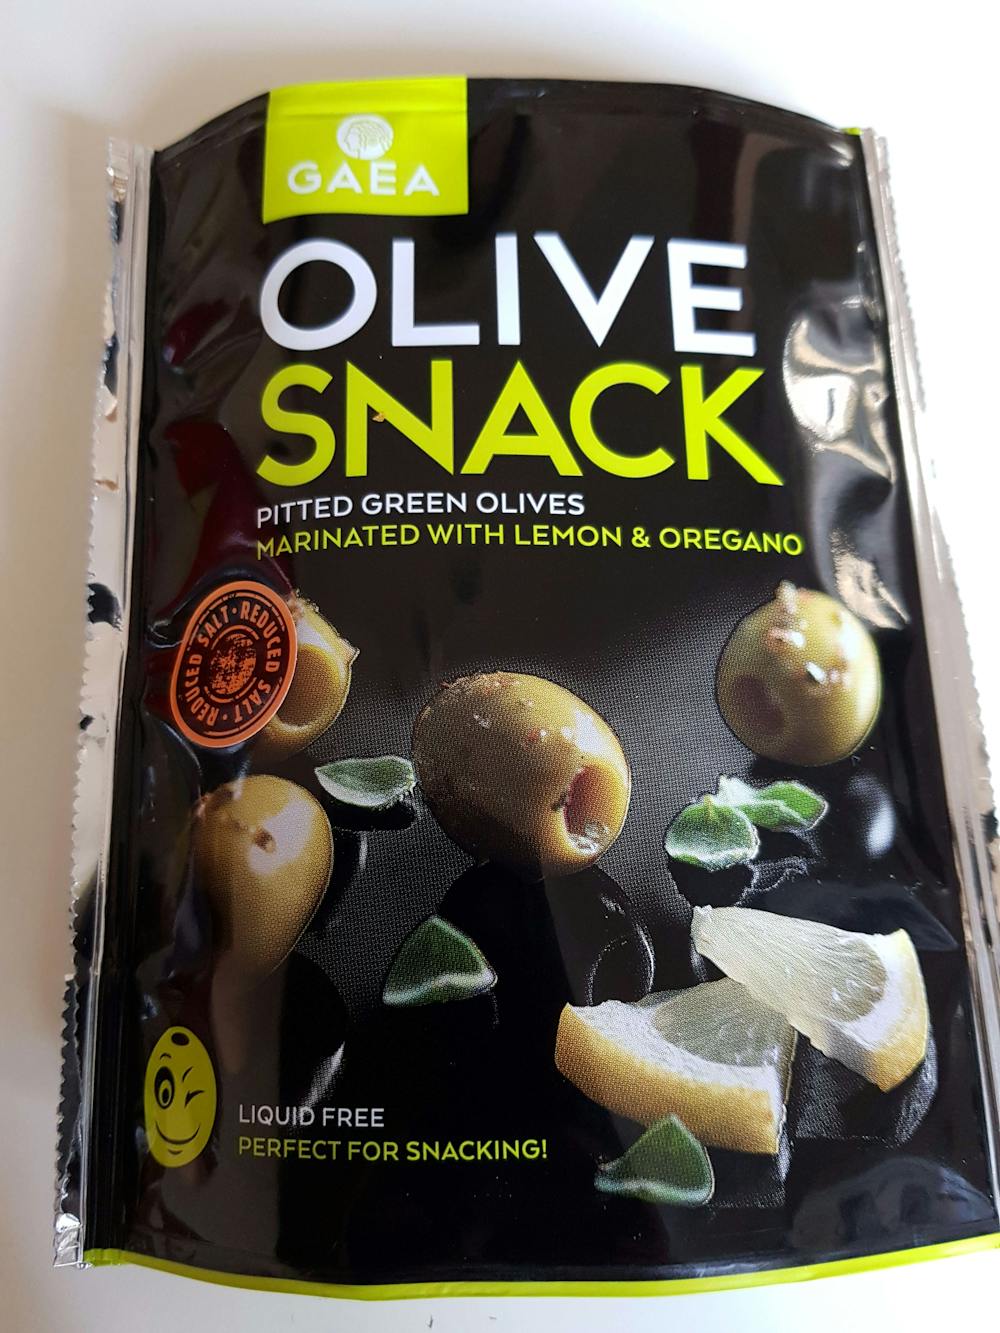 Olive snack green olives marinated with lemon & oregano, Gaea